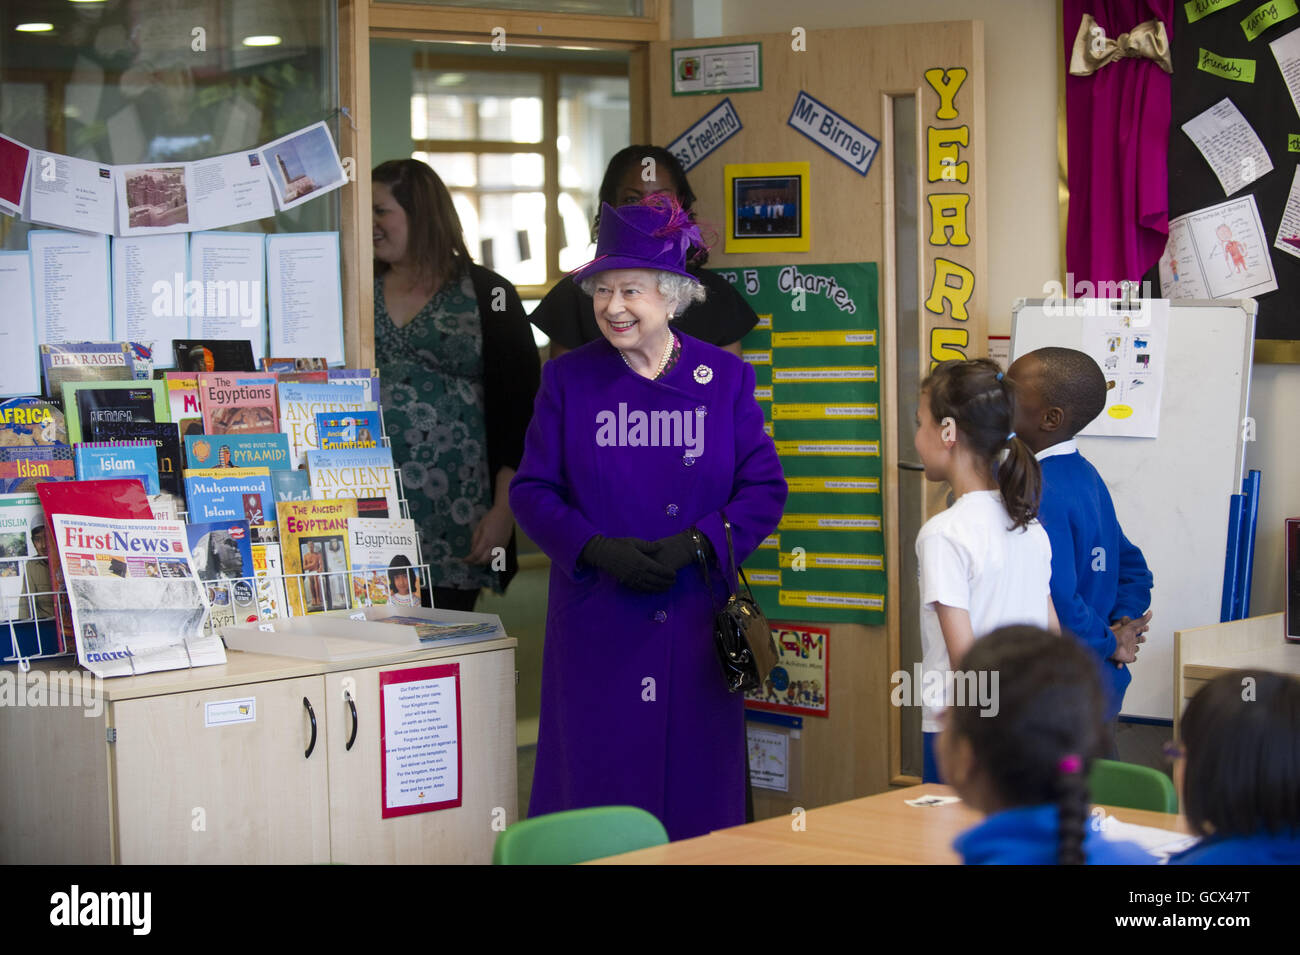 La reine Elizabeth II visite l'école primaire de l'église St Mary et St Pancras à Londres où elle a rencontré des élèves dans les salles de classe et a regardé des élèves lire des extraits de la bible dans le cadre du projet de la Bible YouTube. Banque D'Images